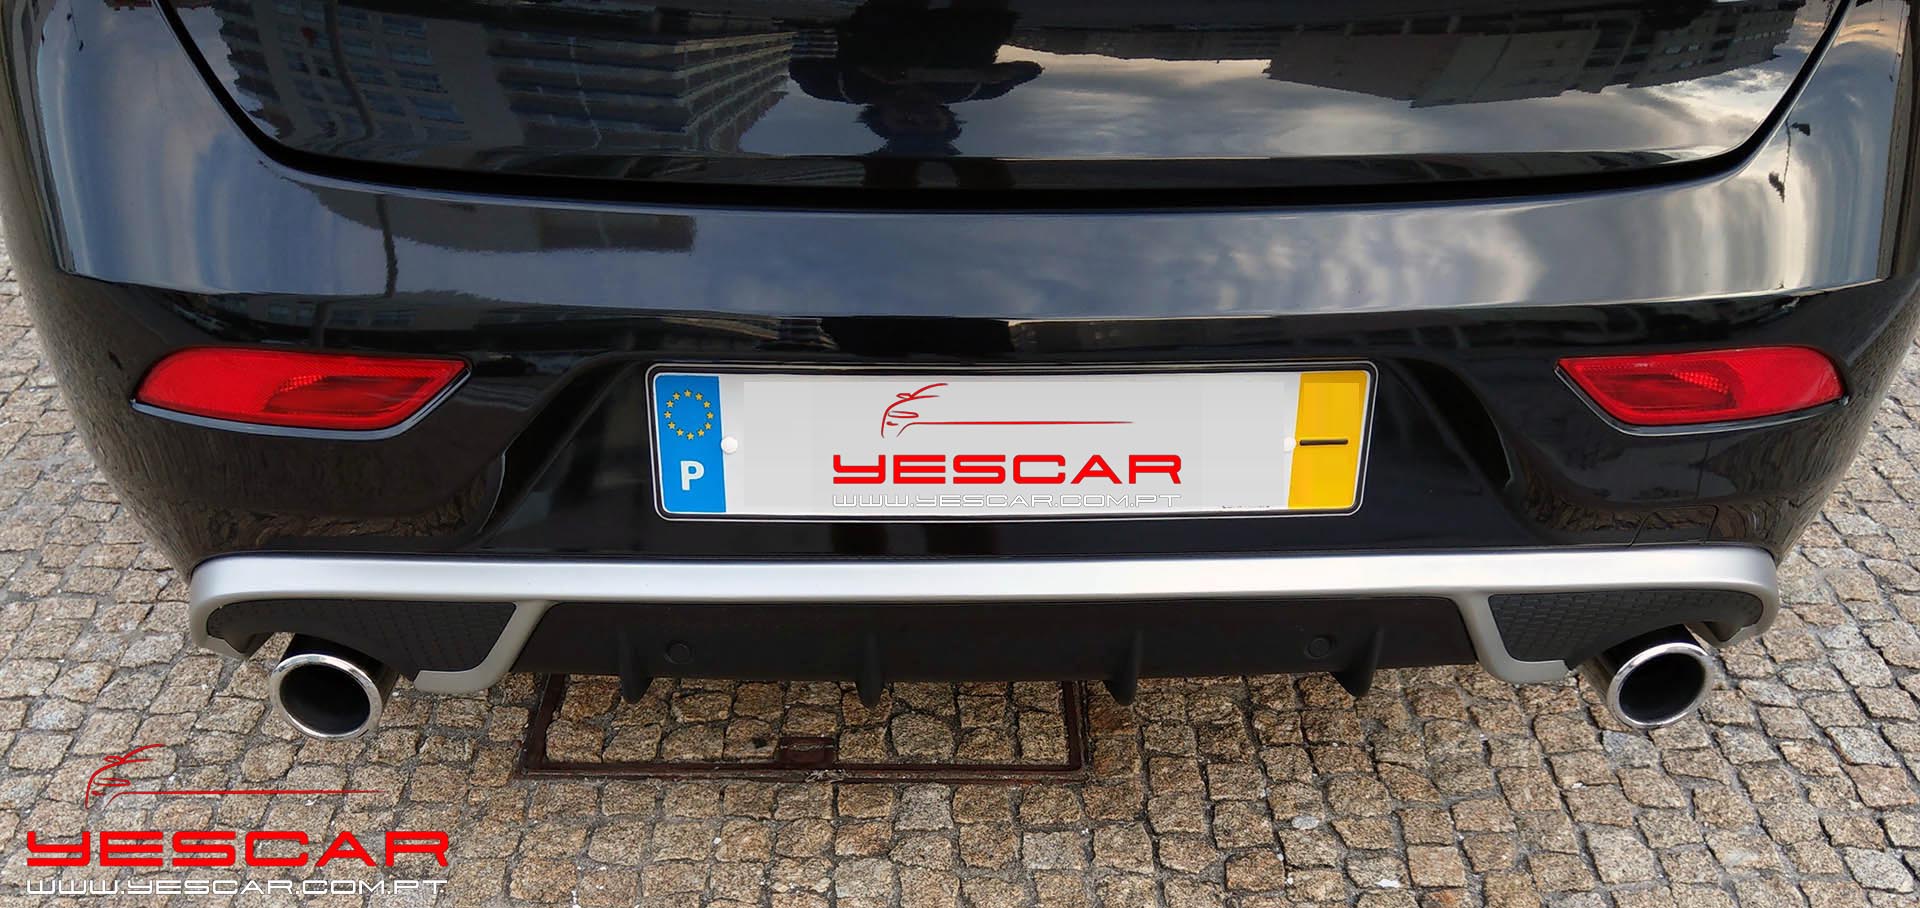 YESCAR_Volvo_V40_D2Rdesign (23)